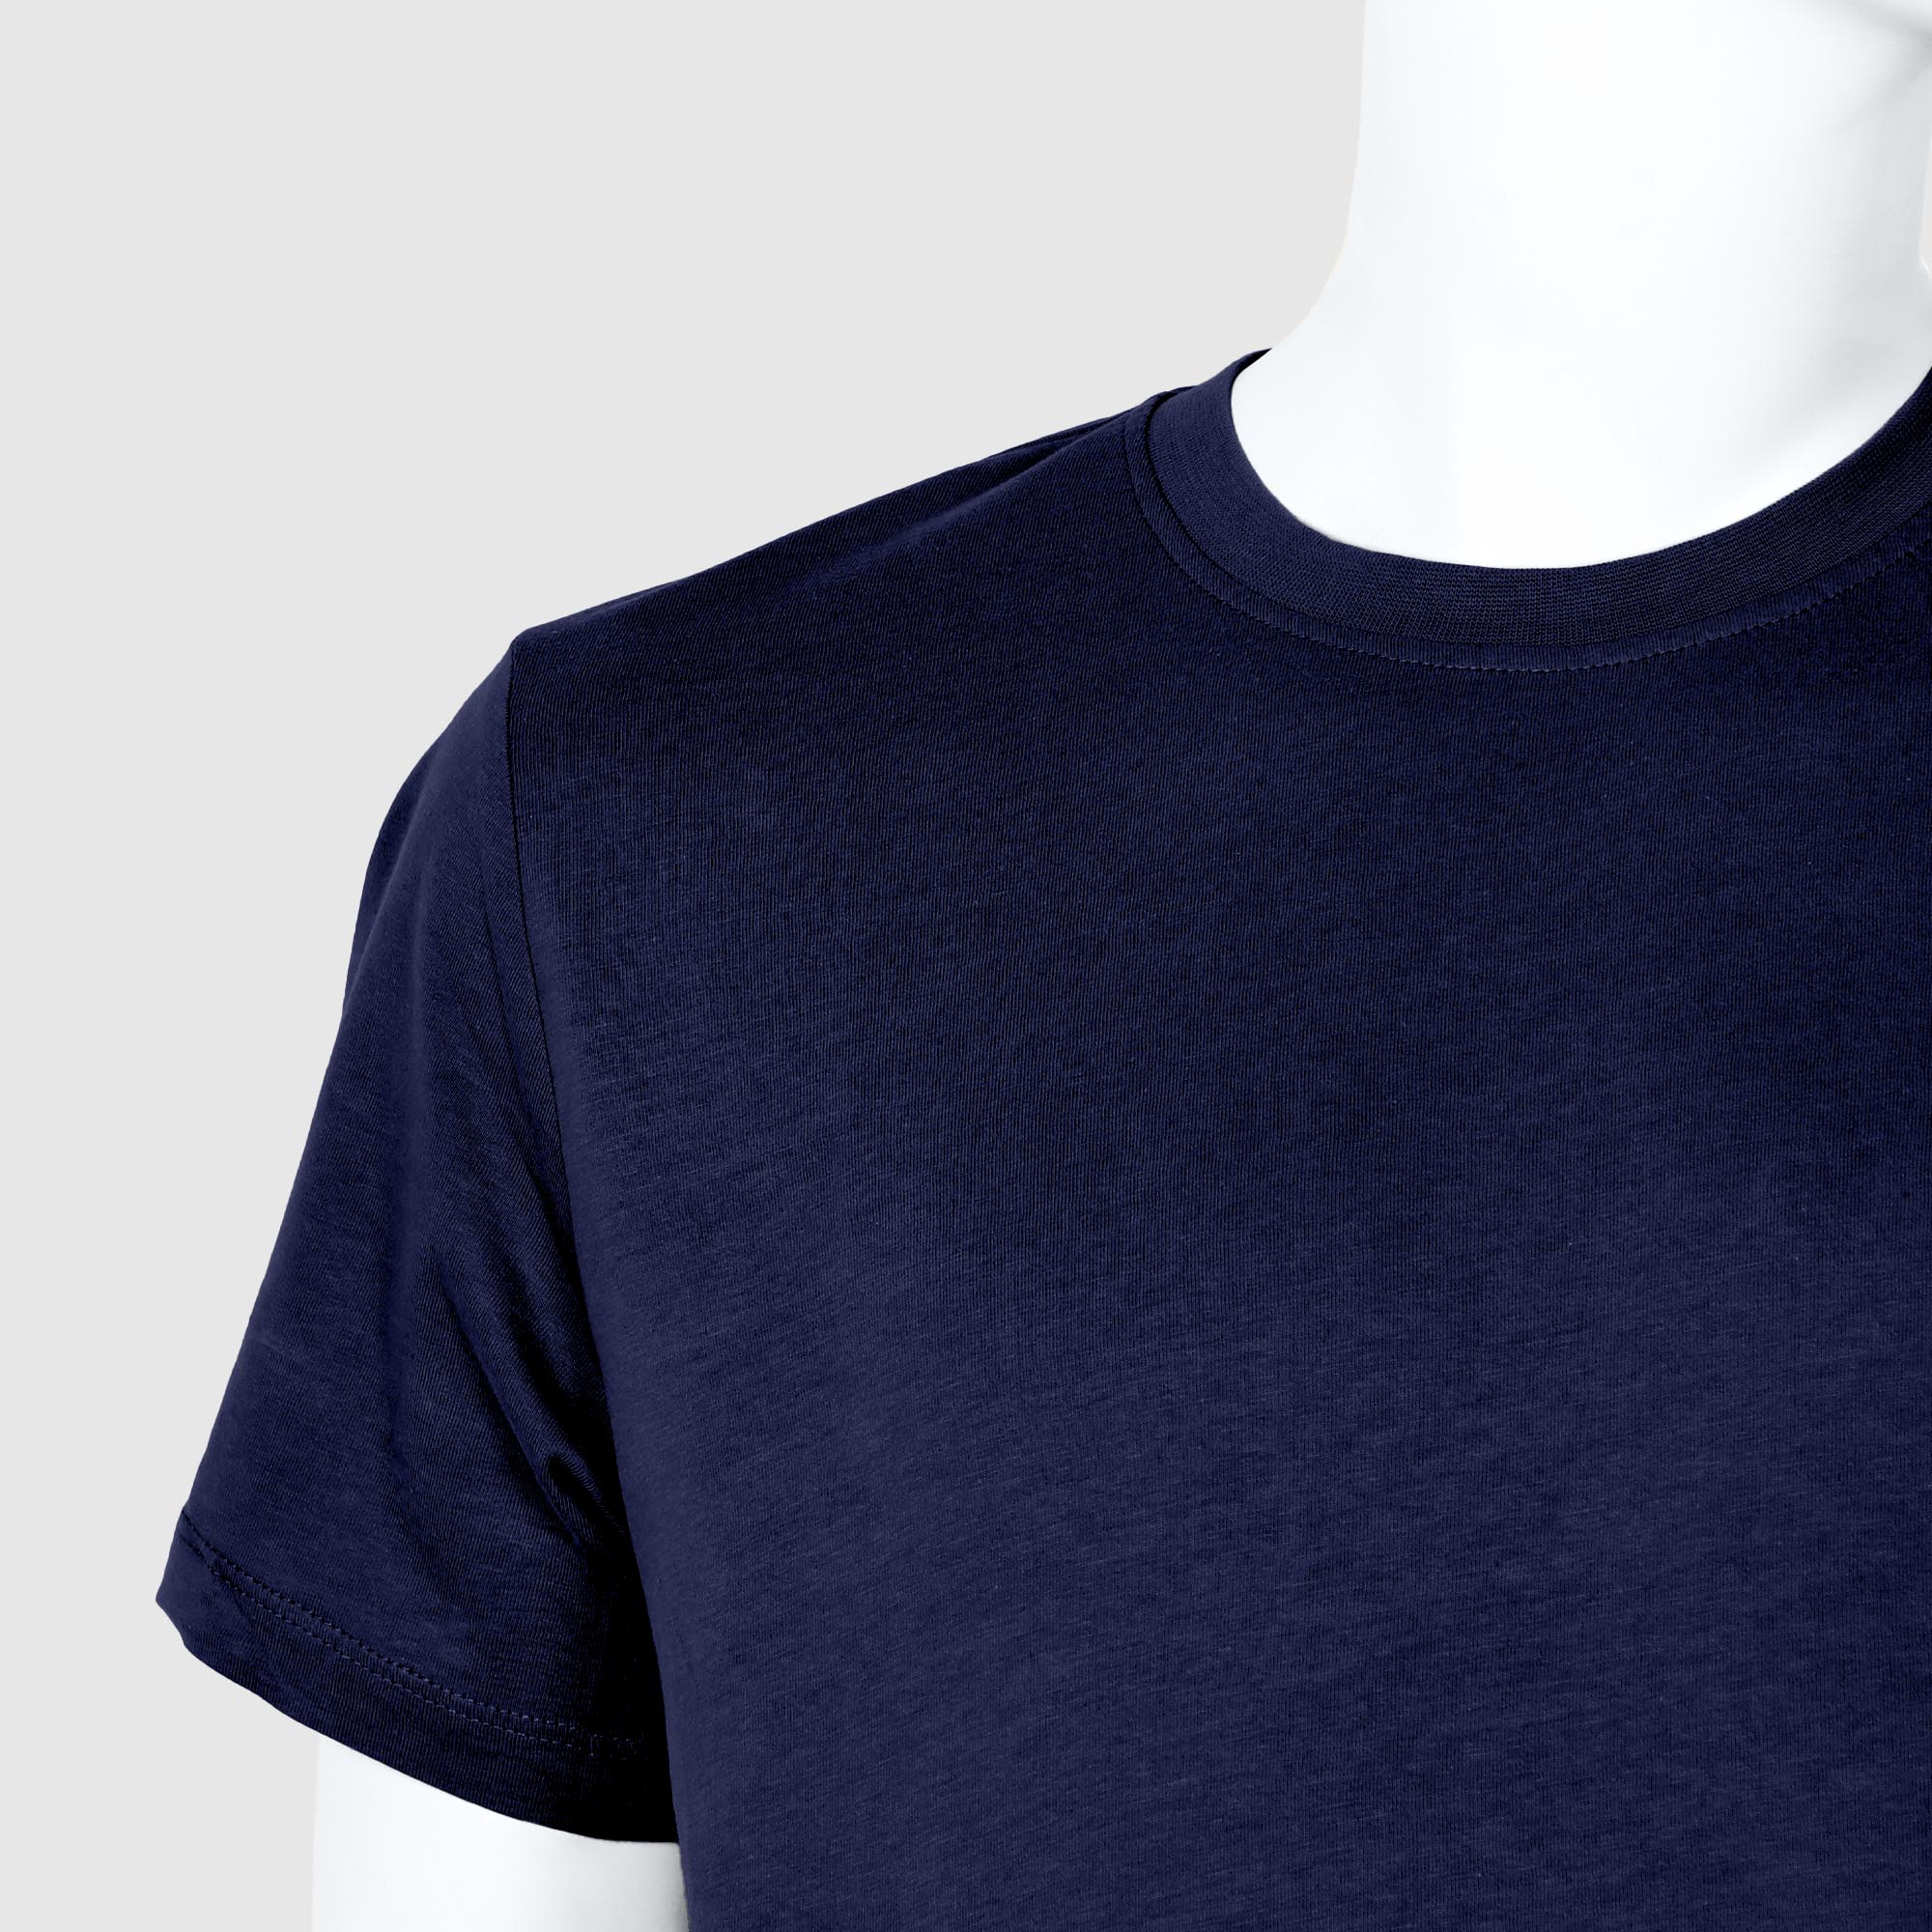 Мужская футболка Diva Teks синяя (DTD-05), цвет синий, размер 52-54 - фото 3